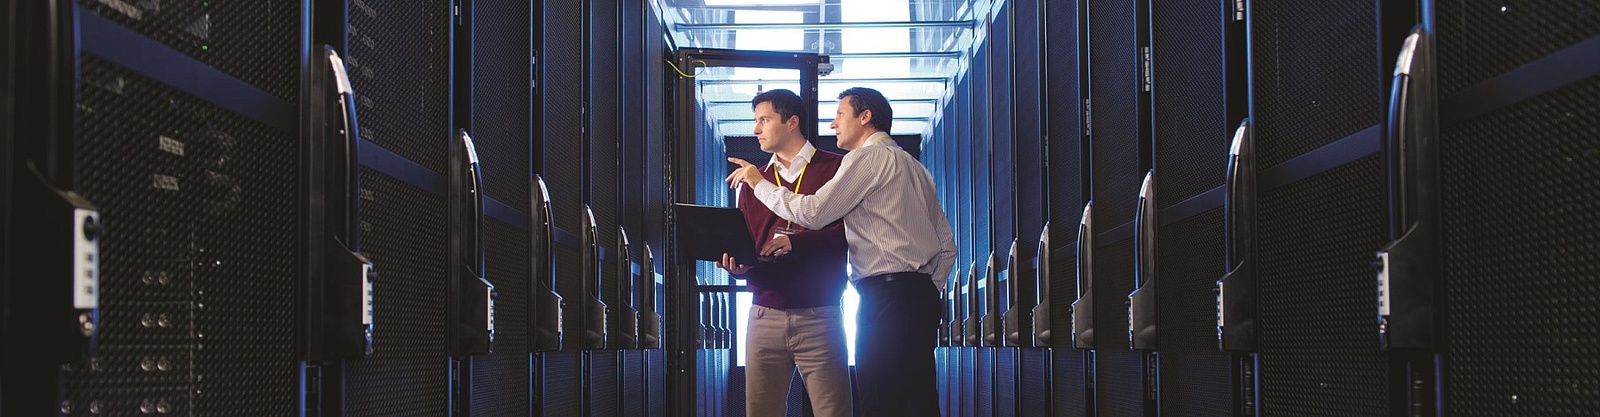 Två män diskuterar mellan två långa rader av dataservrar 